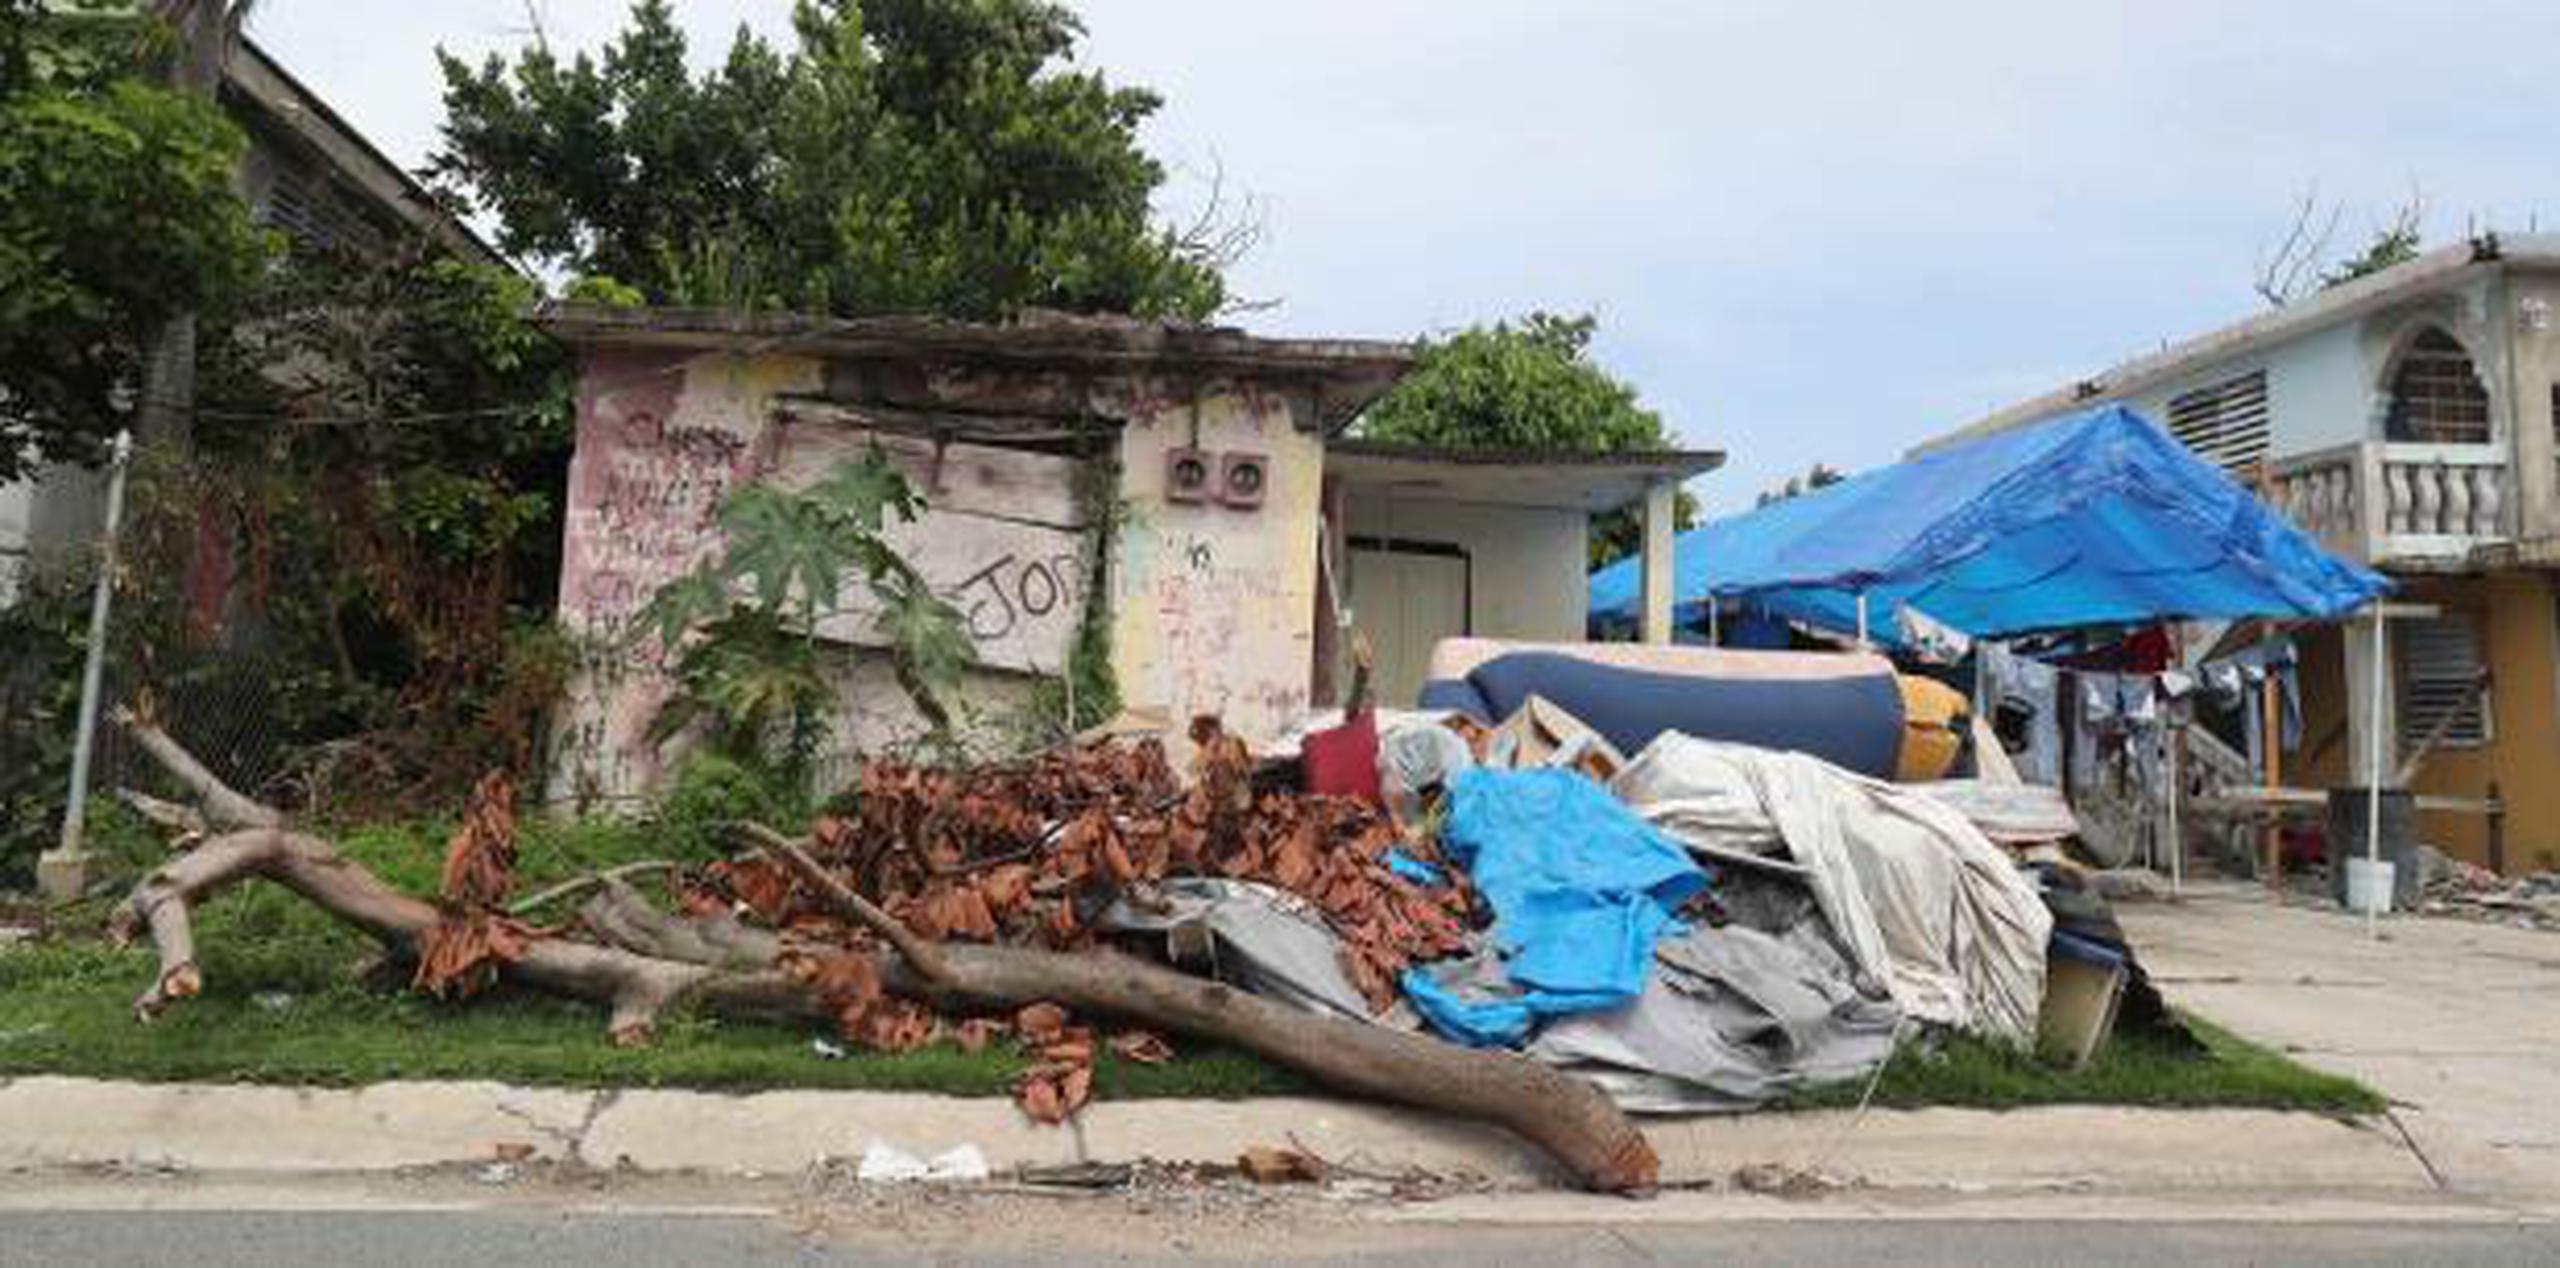 Decenas de hogares en Loíza permanecen en ruinas, abrazadas por enredaderas y escombros. (david.villafane@gfrmedia.com)
